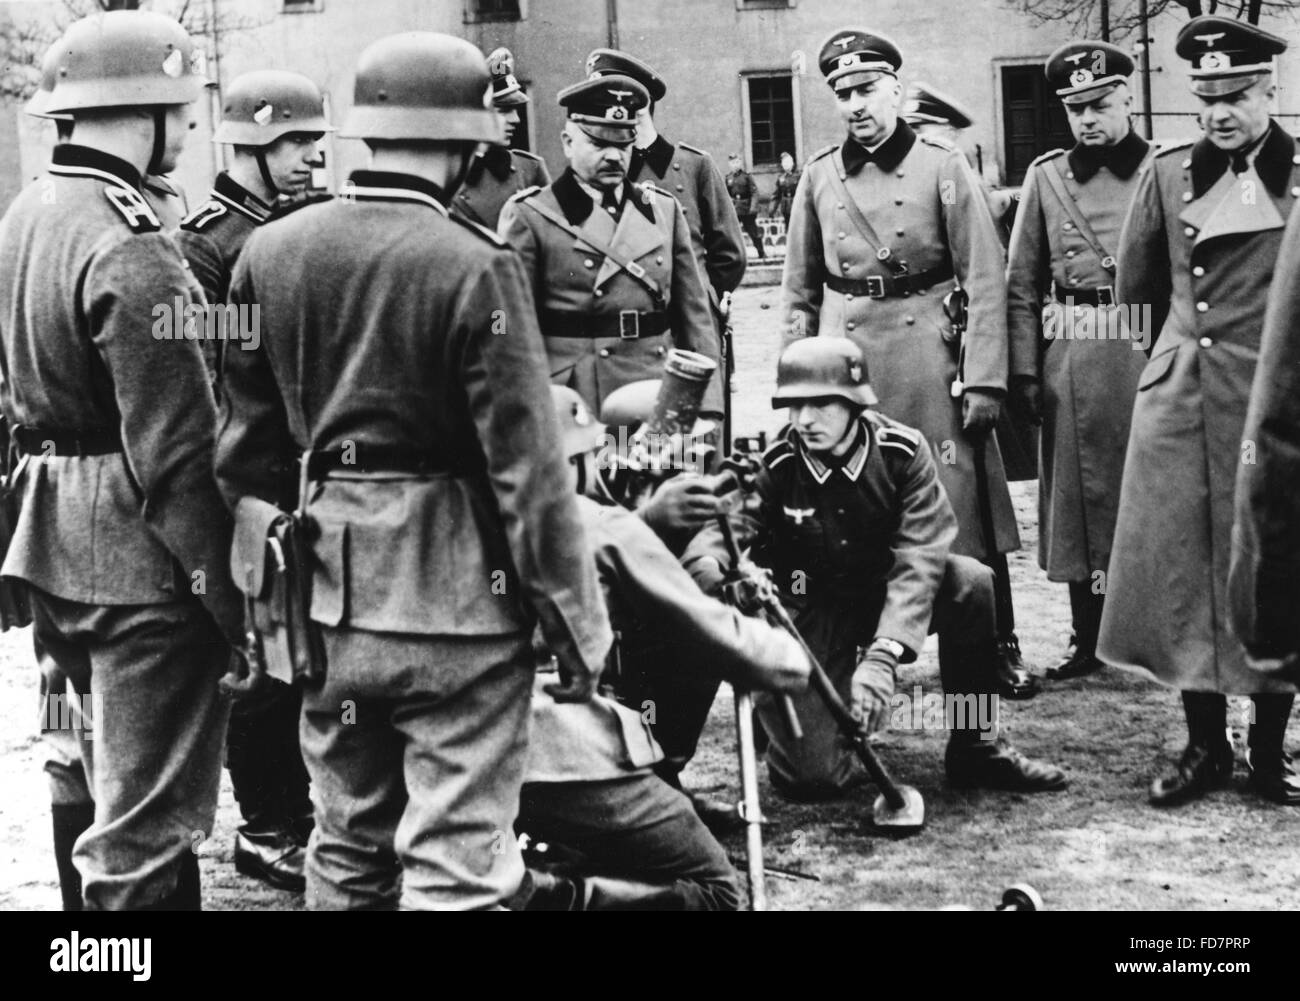 Oberst - General von Brauchitsch besucht das Army College in Dresden, 1939 Stockfoto